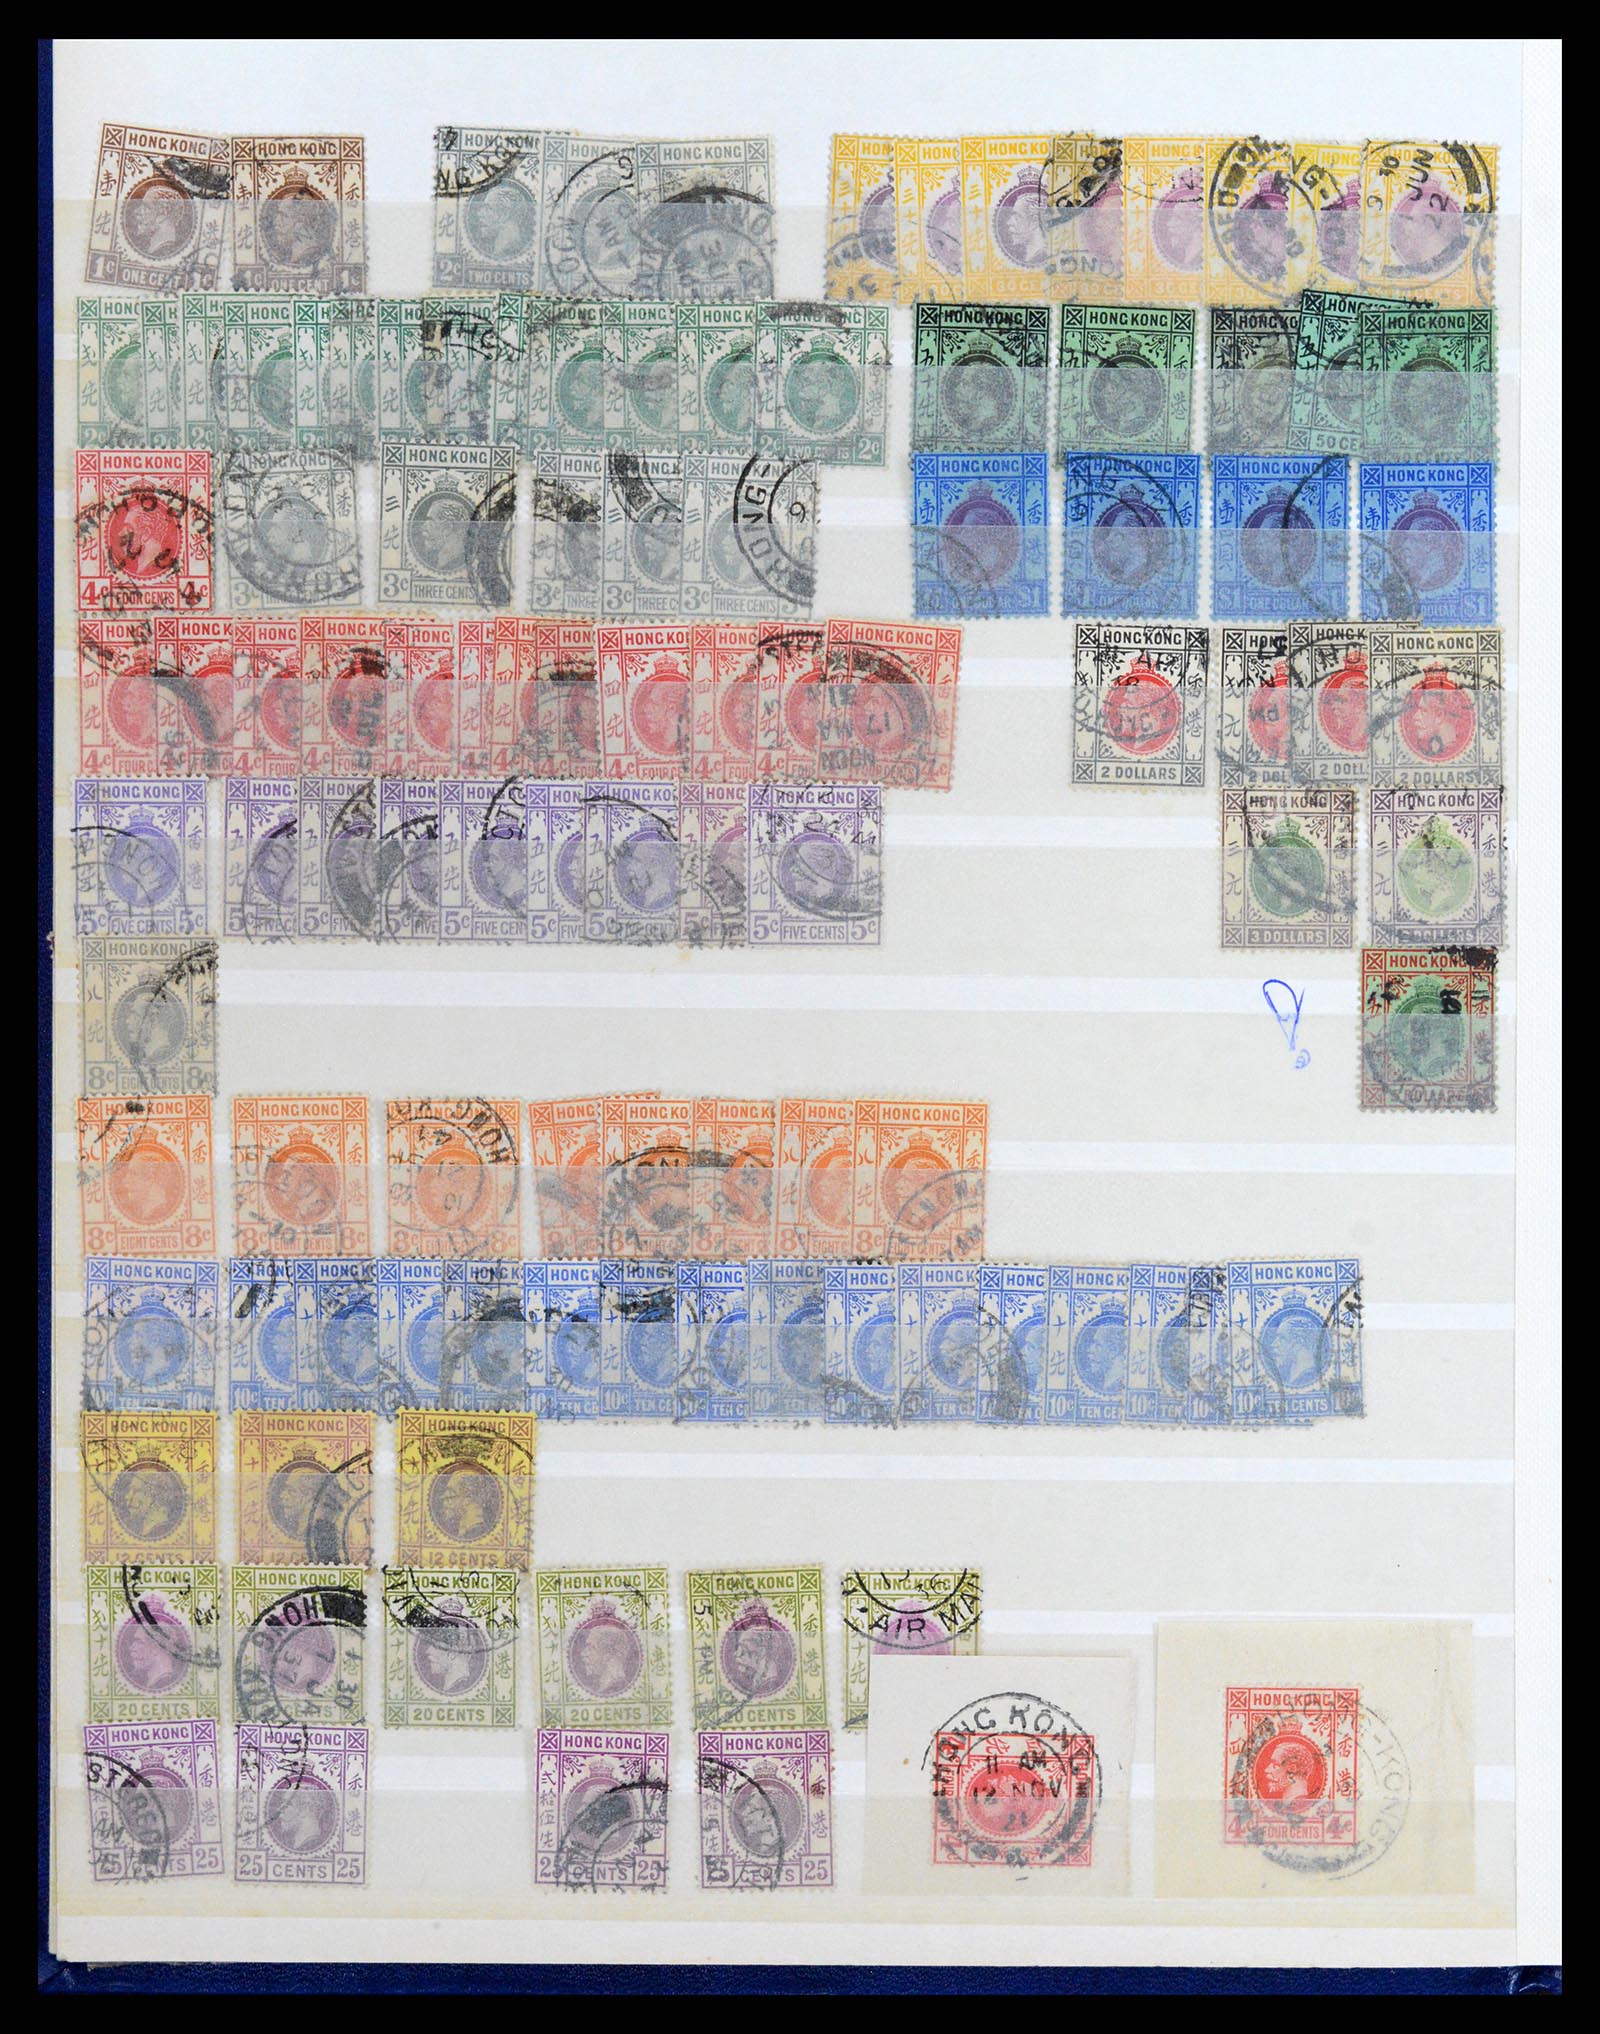 37358 045 - Stamp collection 37358 Hong Kong 1861-1997.